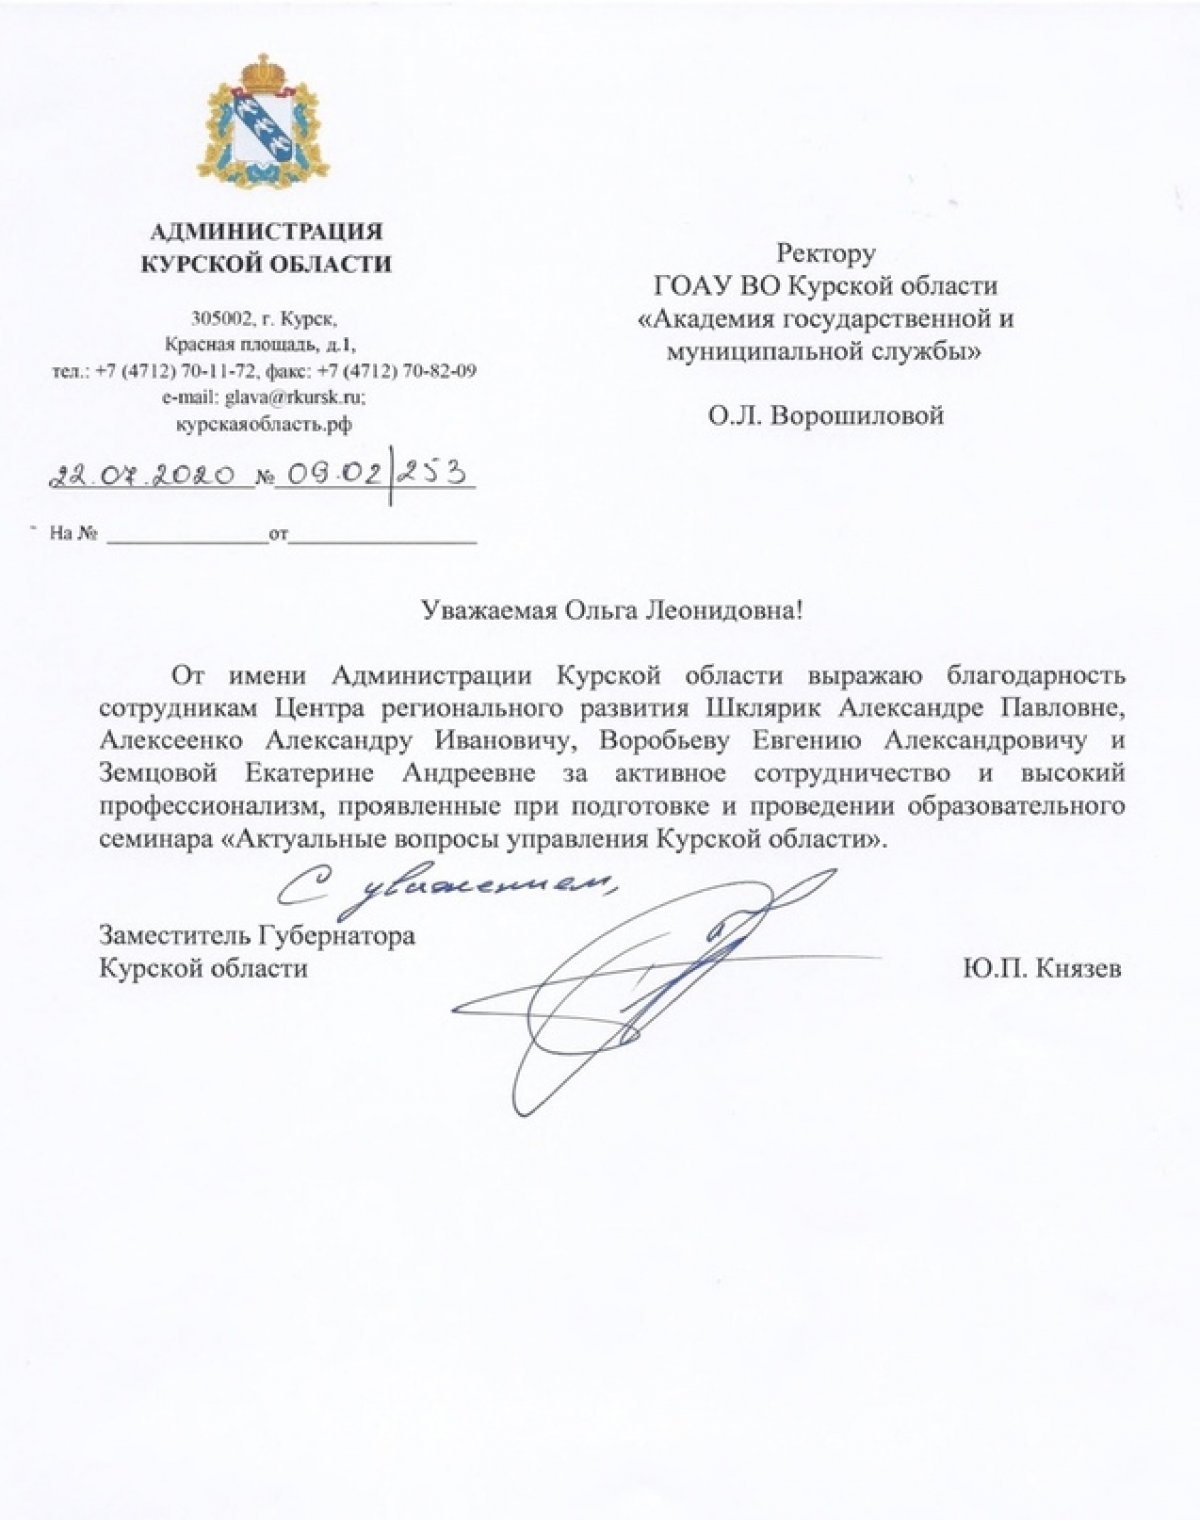 Администрация Курской области выражает благодарность сотрудникам Центра регионального развития Академии госслужбы